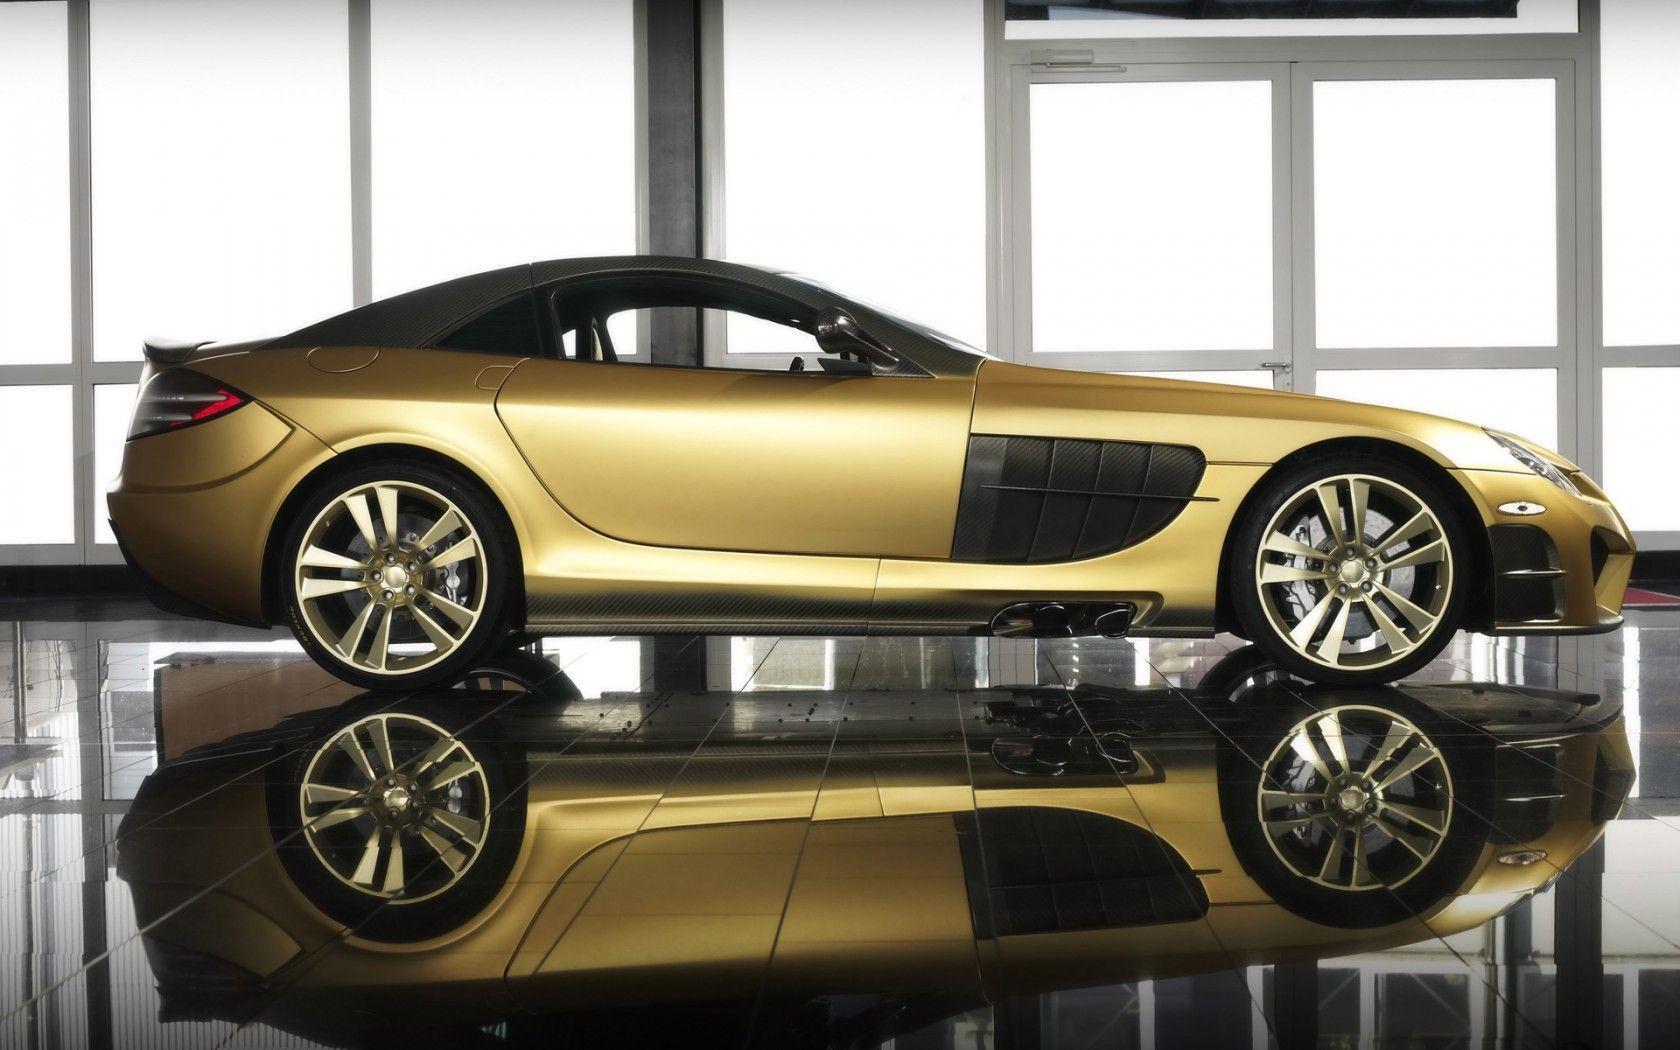 Mercedes Benz Desktop HD Wallpaper Golden Cars Widescreen Slr